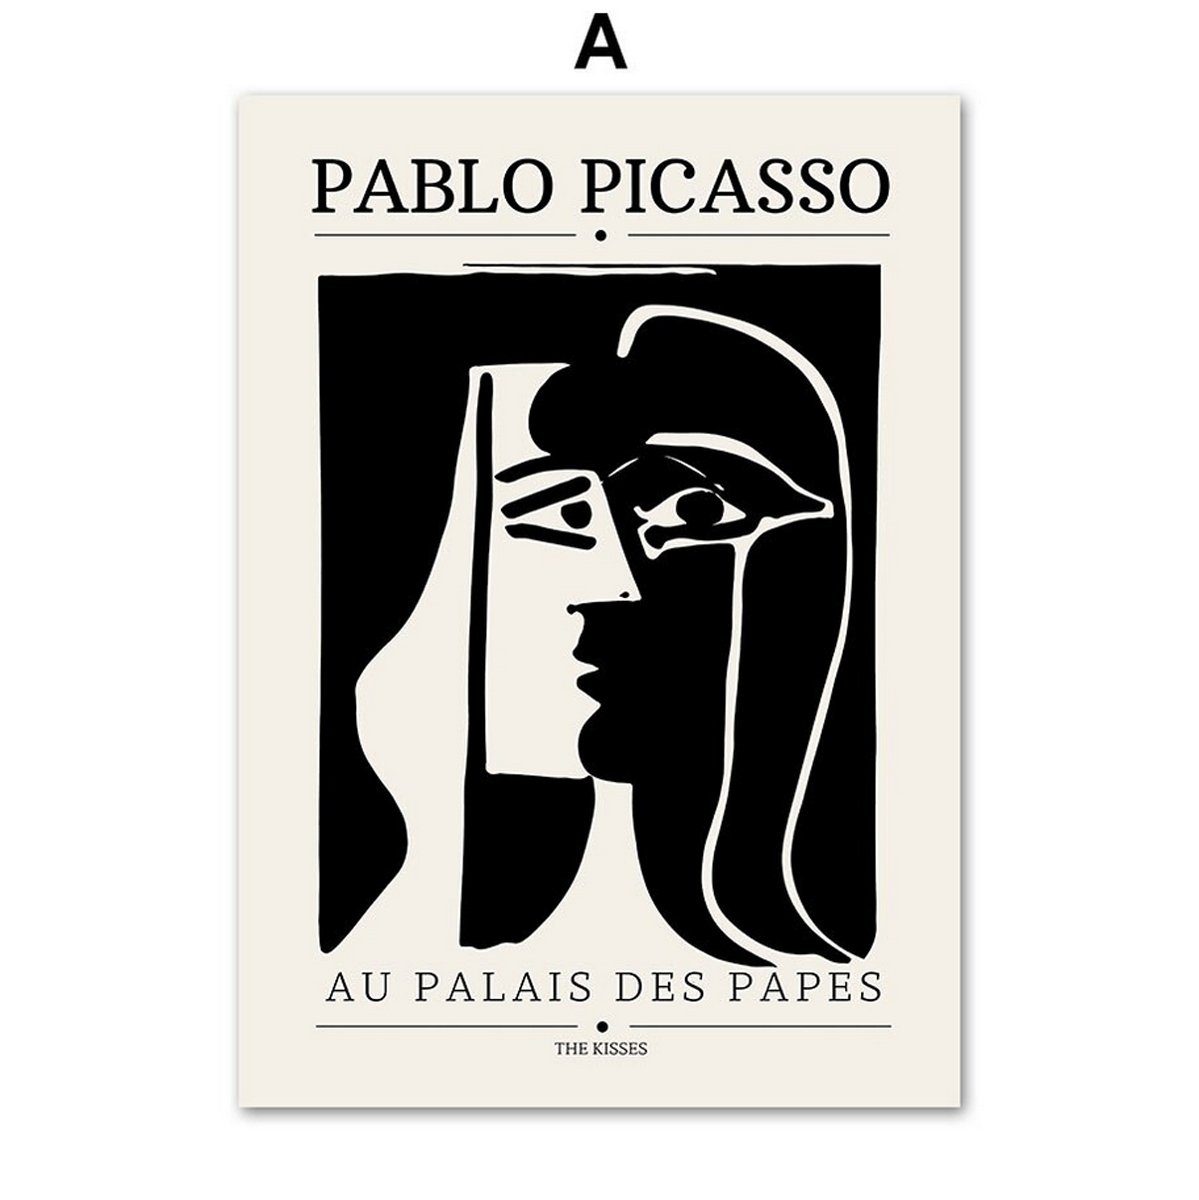 TPFLiving Kunstdruck (OHNE RAHMEN) Poster - Leinwand - Wandbild, Bauhaus - Geometrische Formen - (Henri Matisse - Pablo Picasso), Farben: schwarz und weiß - Größe 21x30cm